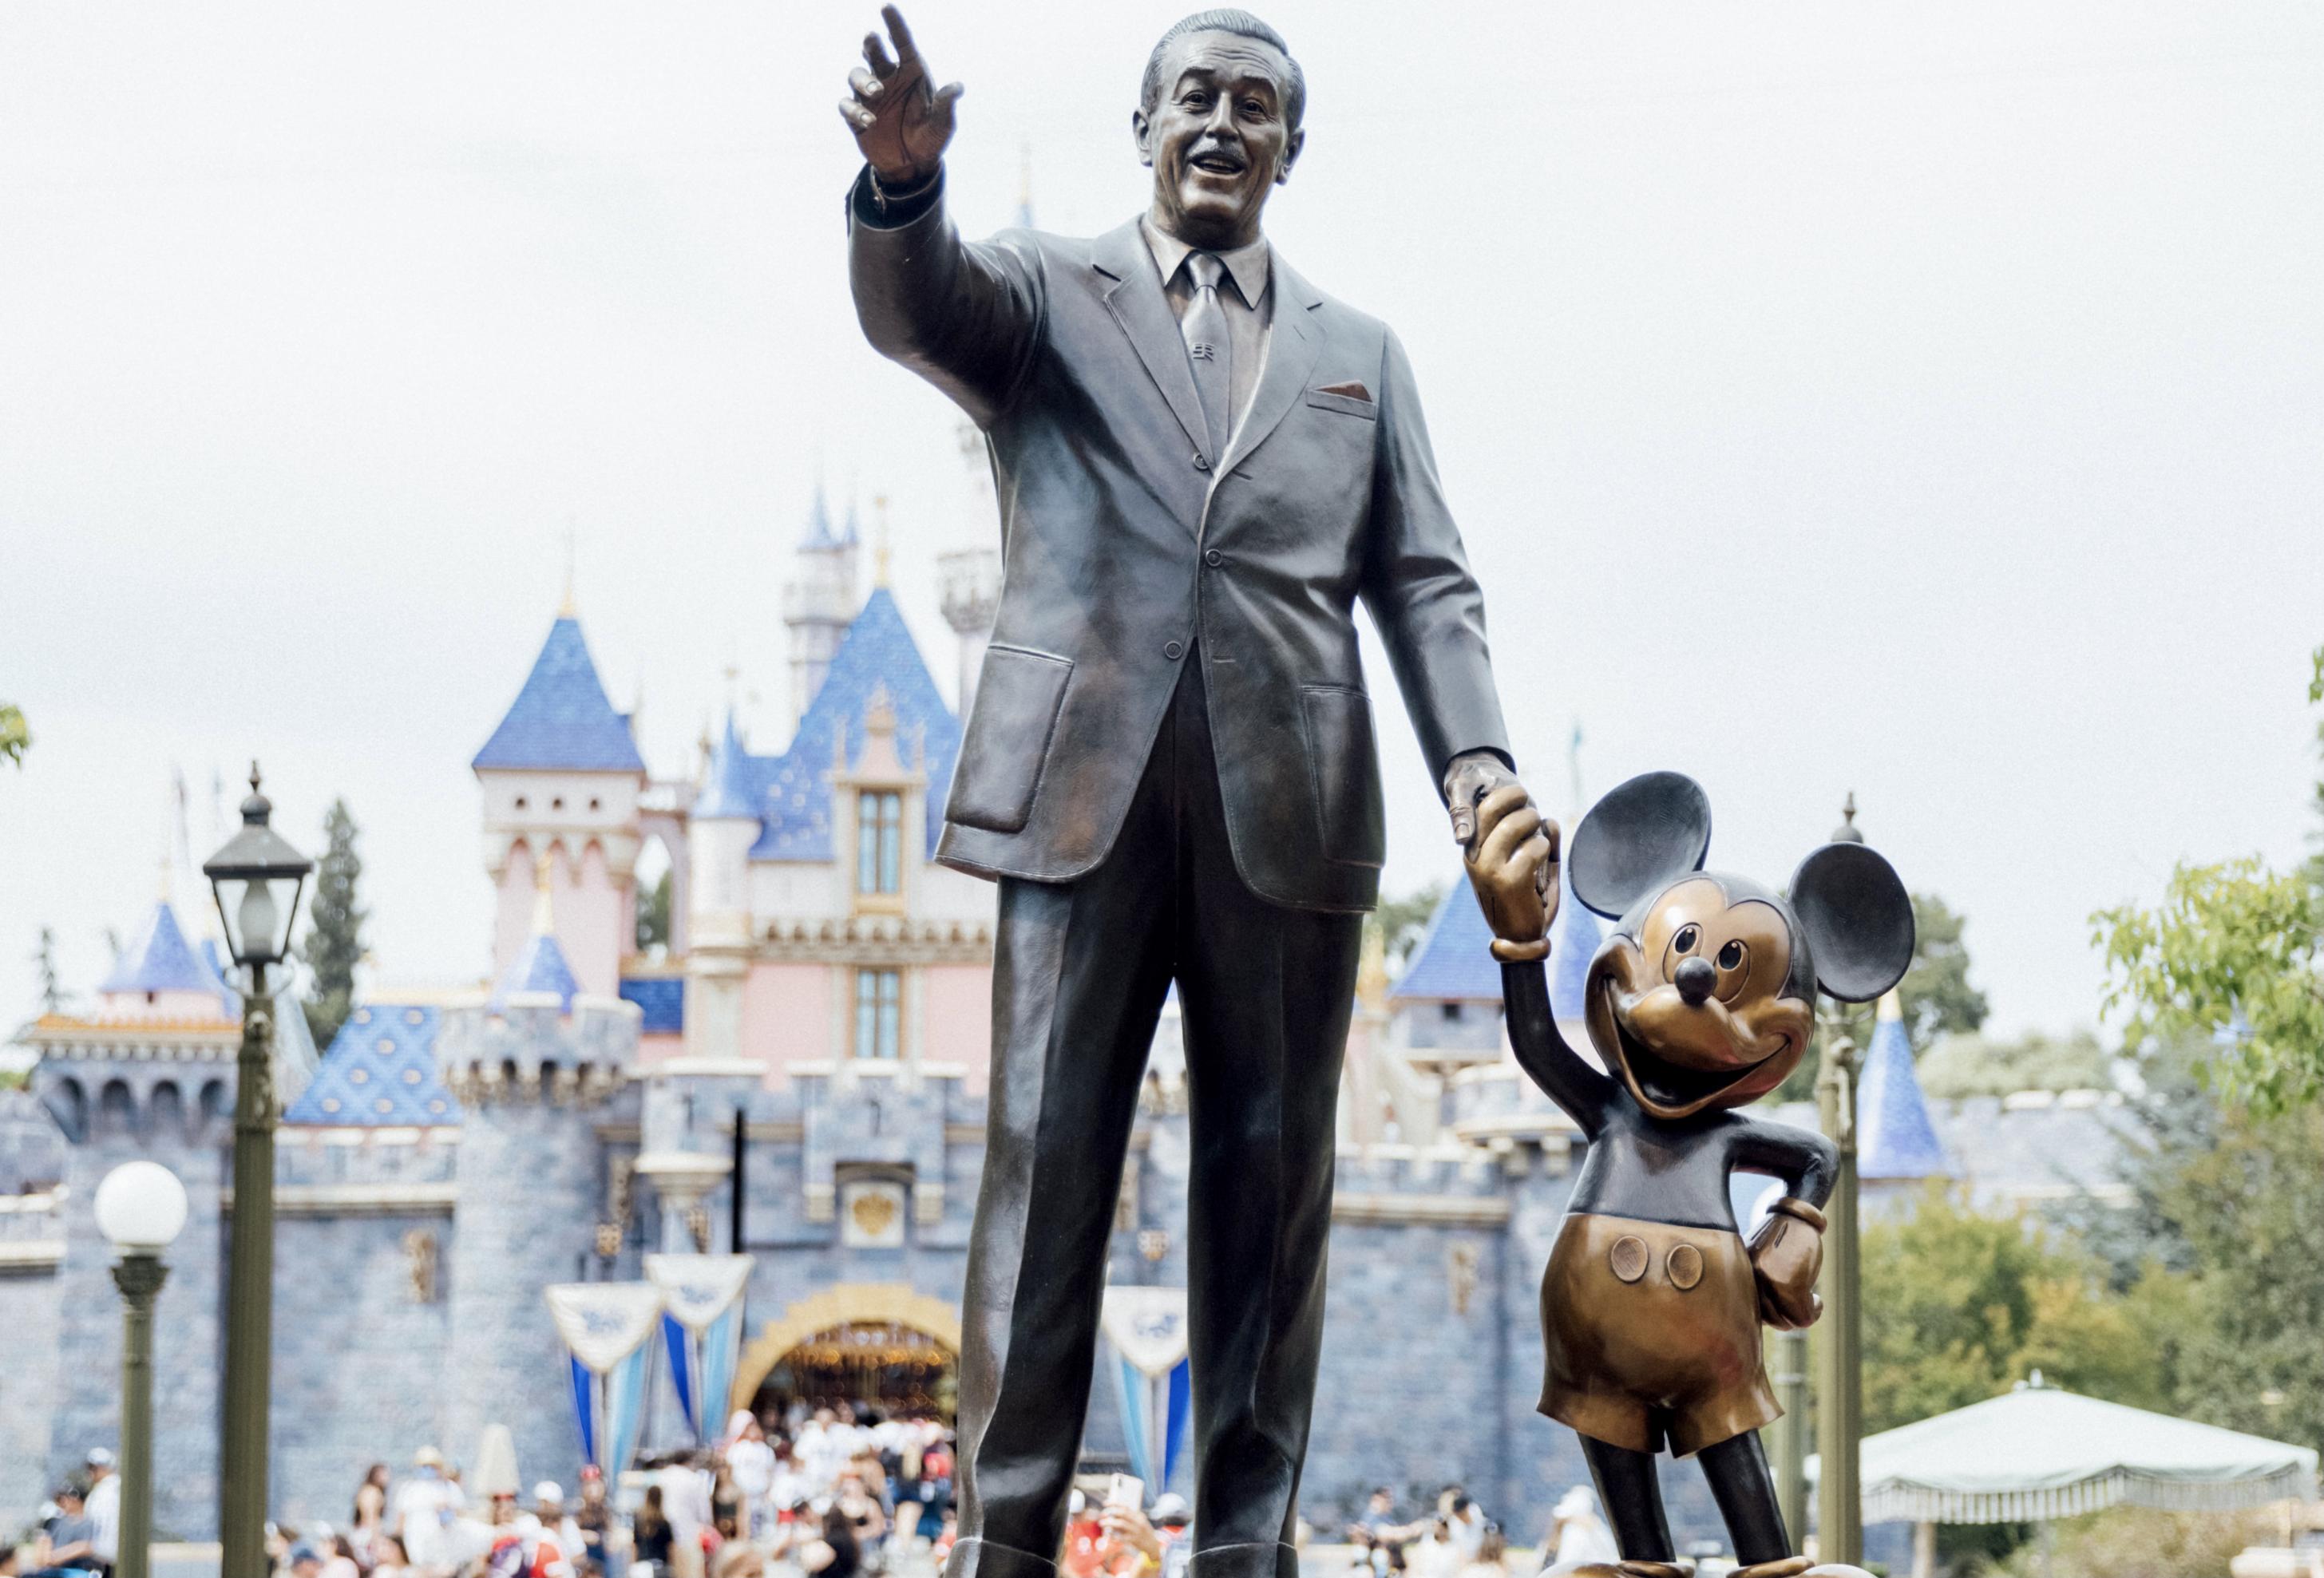 Bronzestatue von Walt Disney und Mickey Mouse Händchen haltend am Eingang von Disneyland, Walt Disney scheint auf die Besucher zuzugehen, Mickey hält eine Hand in die Hüfte.